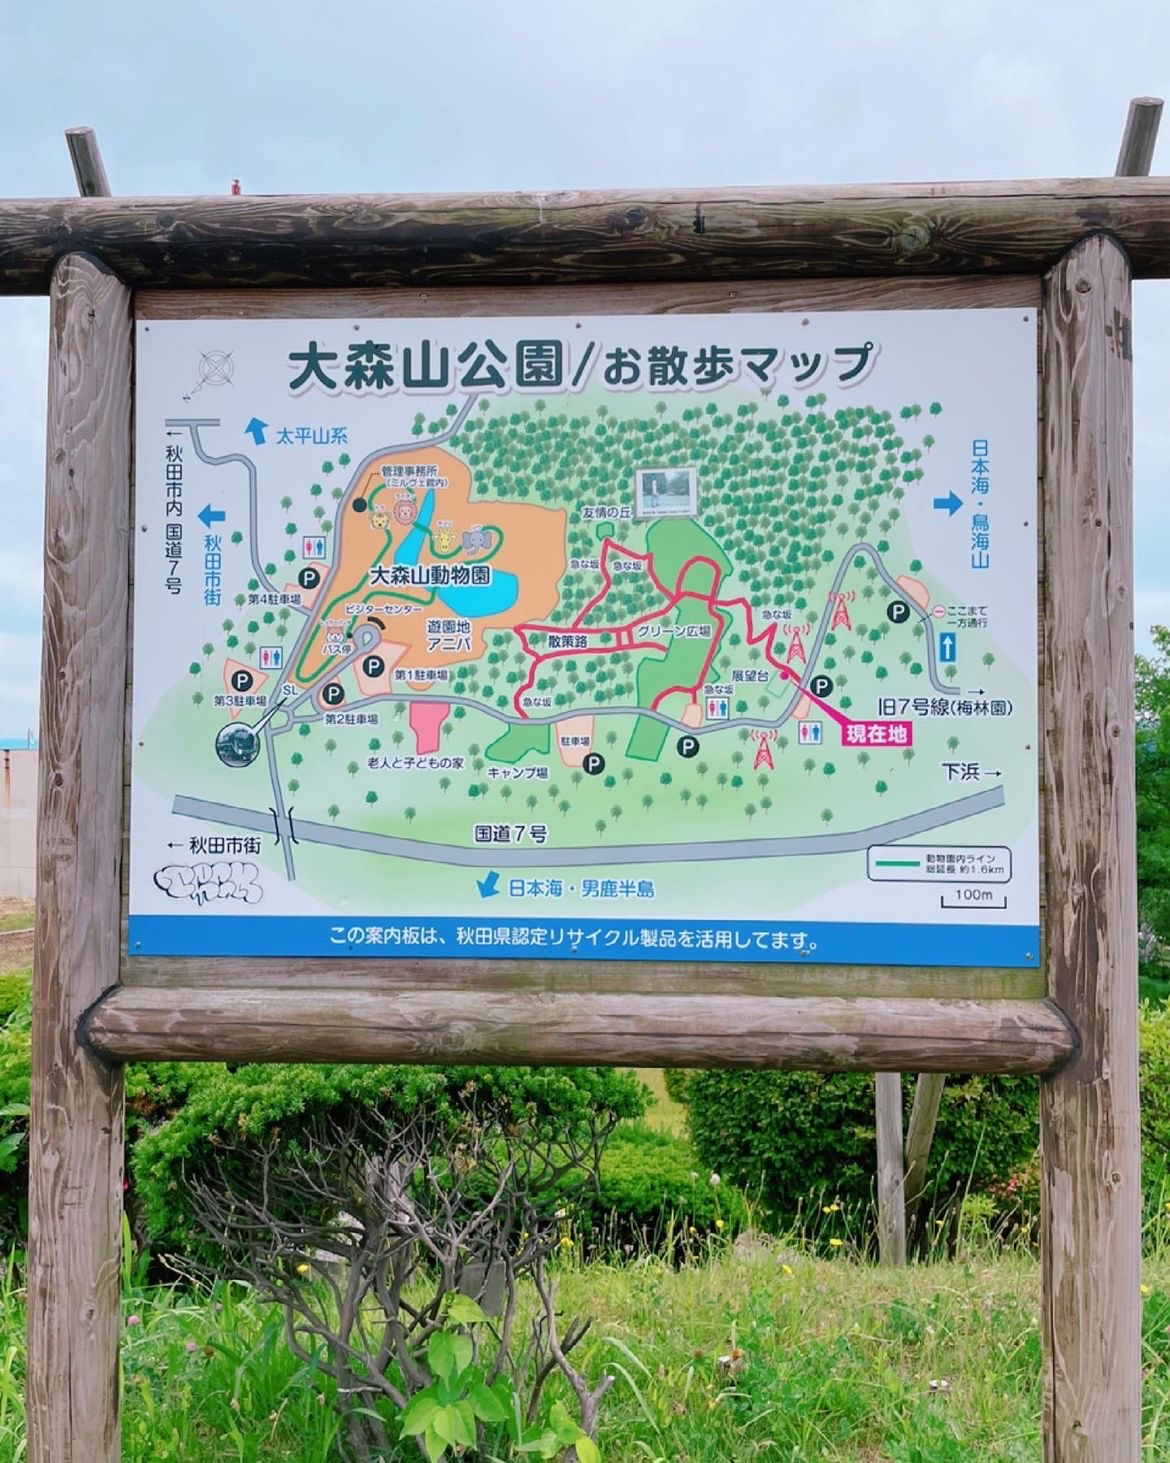 🍁大森山公园：秋田市的自然绿洲与家庭乐园🌳